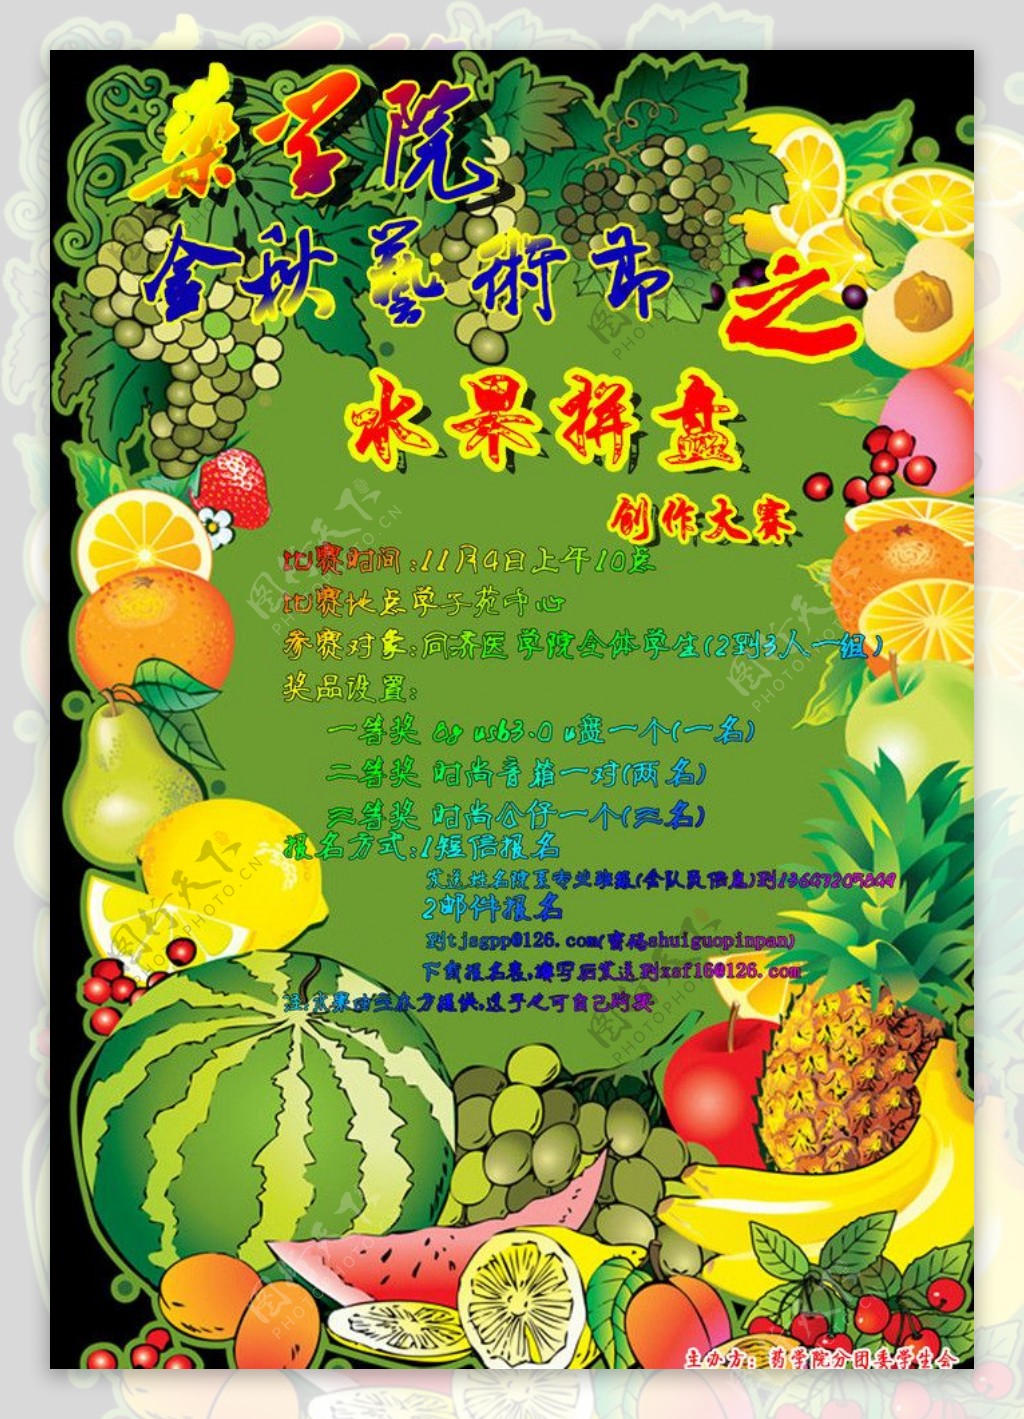 金秋艺术节之水果拼盘图片